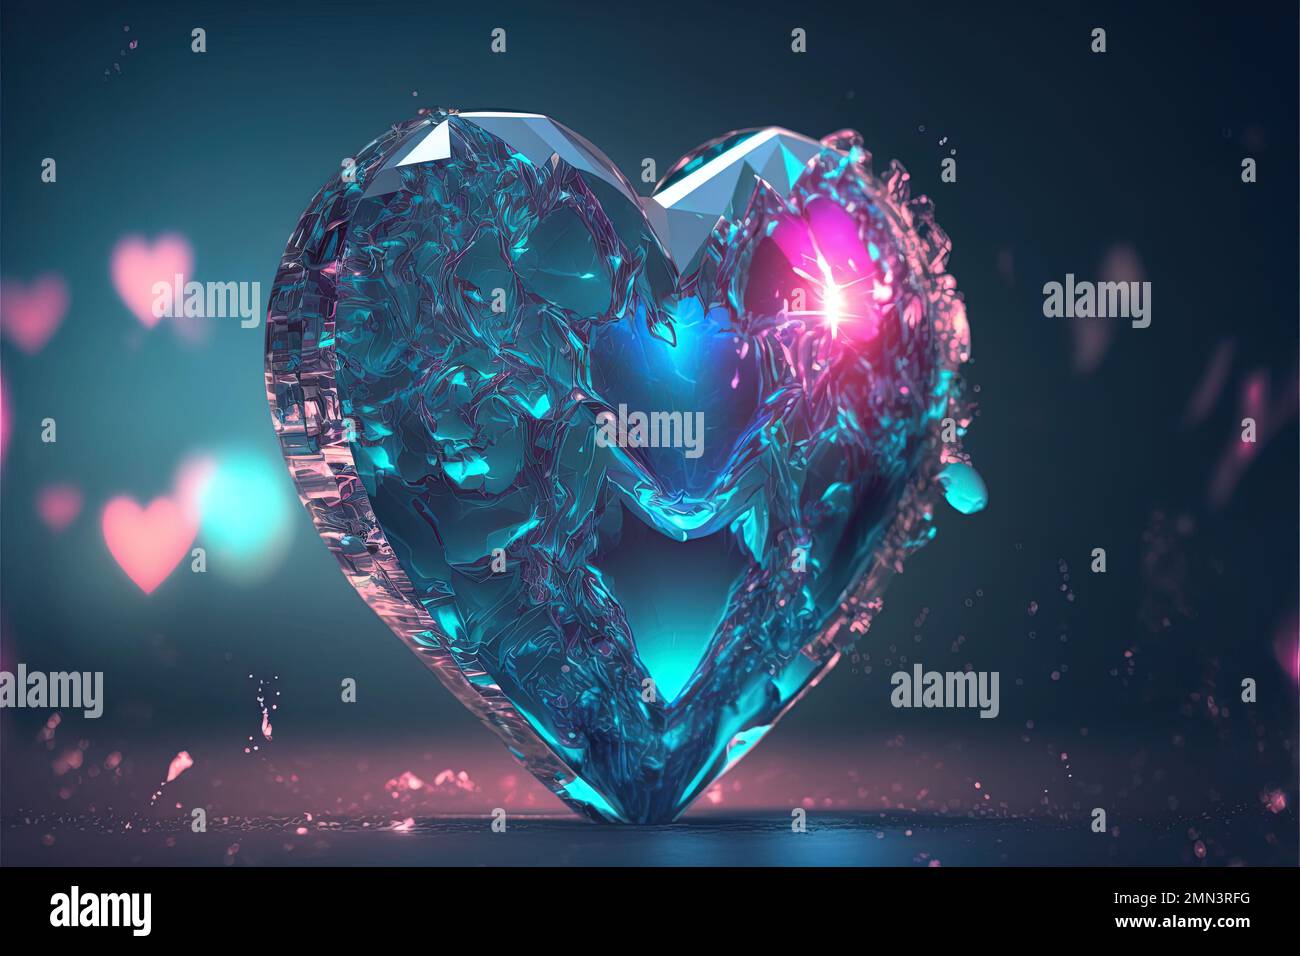 Diamond heart HD wallpapers | Pxfuel